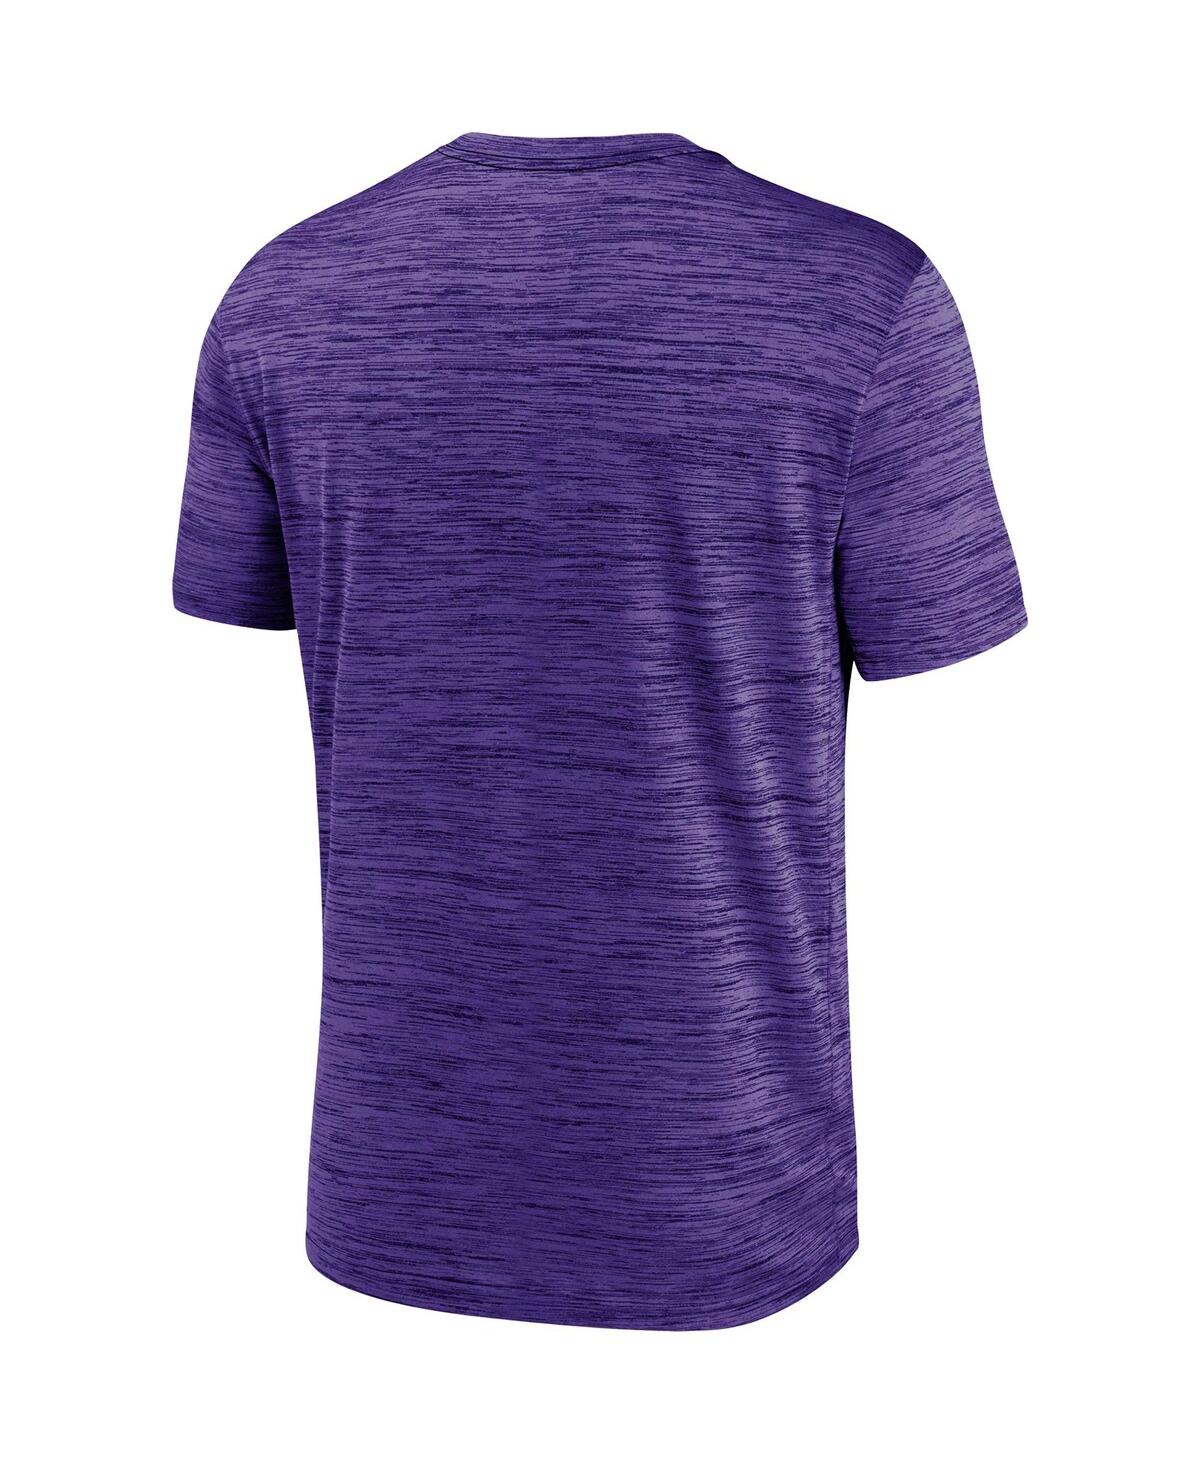 Shop Nike Men's  Purple Baltimore Ravens Velocity Performance T-shirt